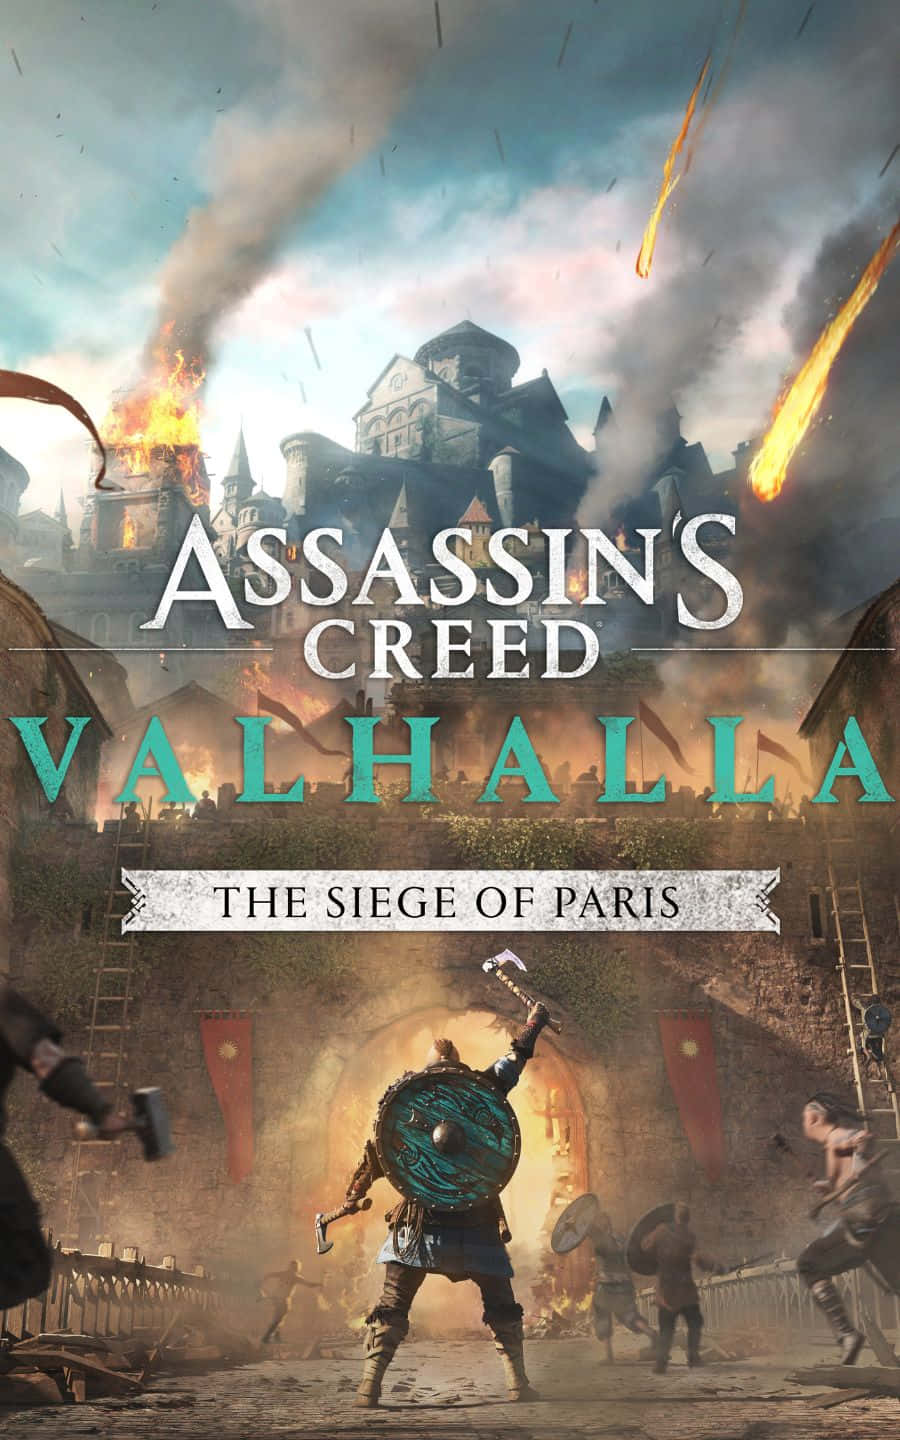 Diebelagerung Von Paris 1440p Assassin's Creed Valhalla Hintergrund